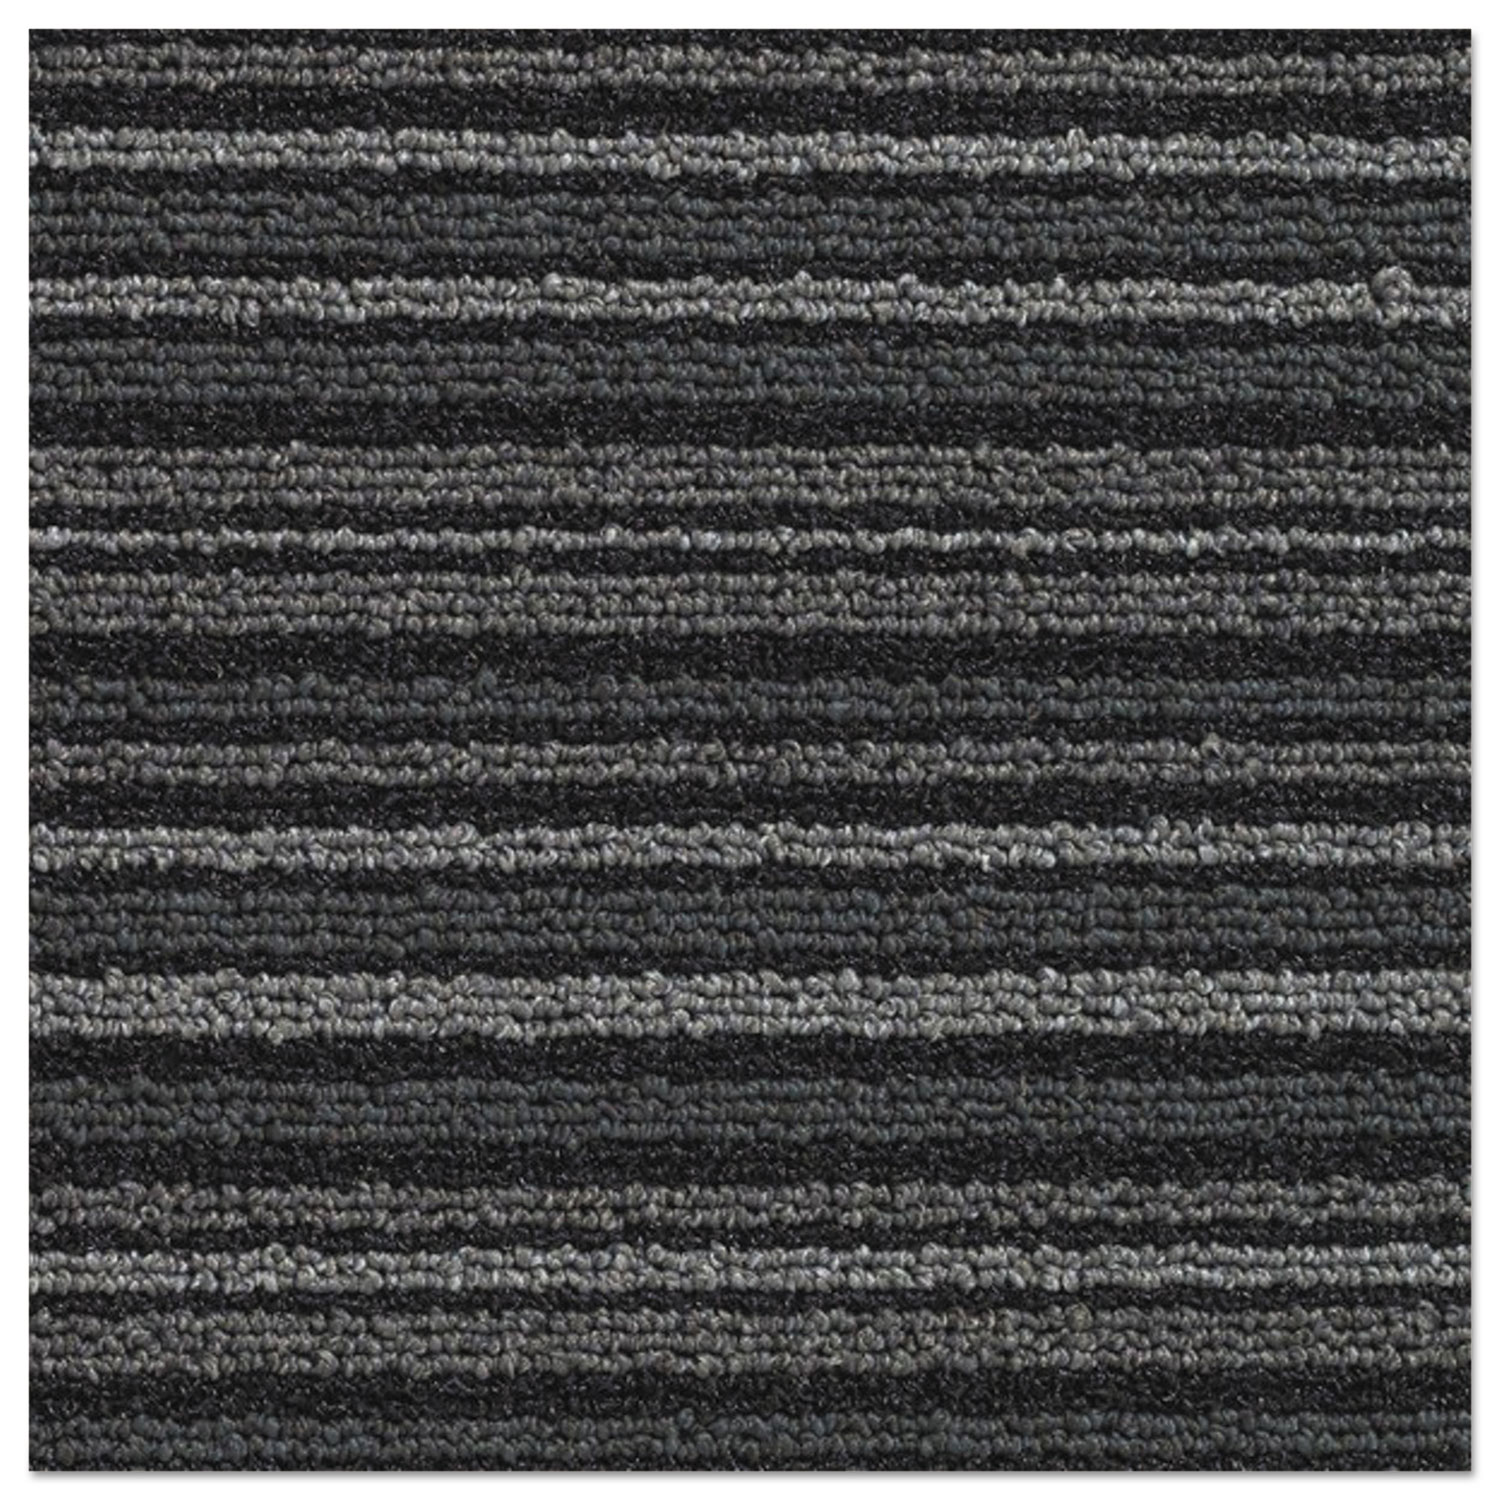 Nomad 7000 Heavy Traffic Carpet Matting, Nylon/Polypropylene, 48 x 120, Gray